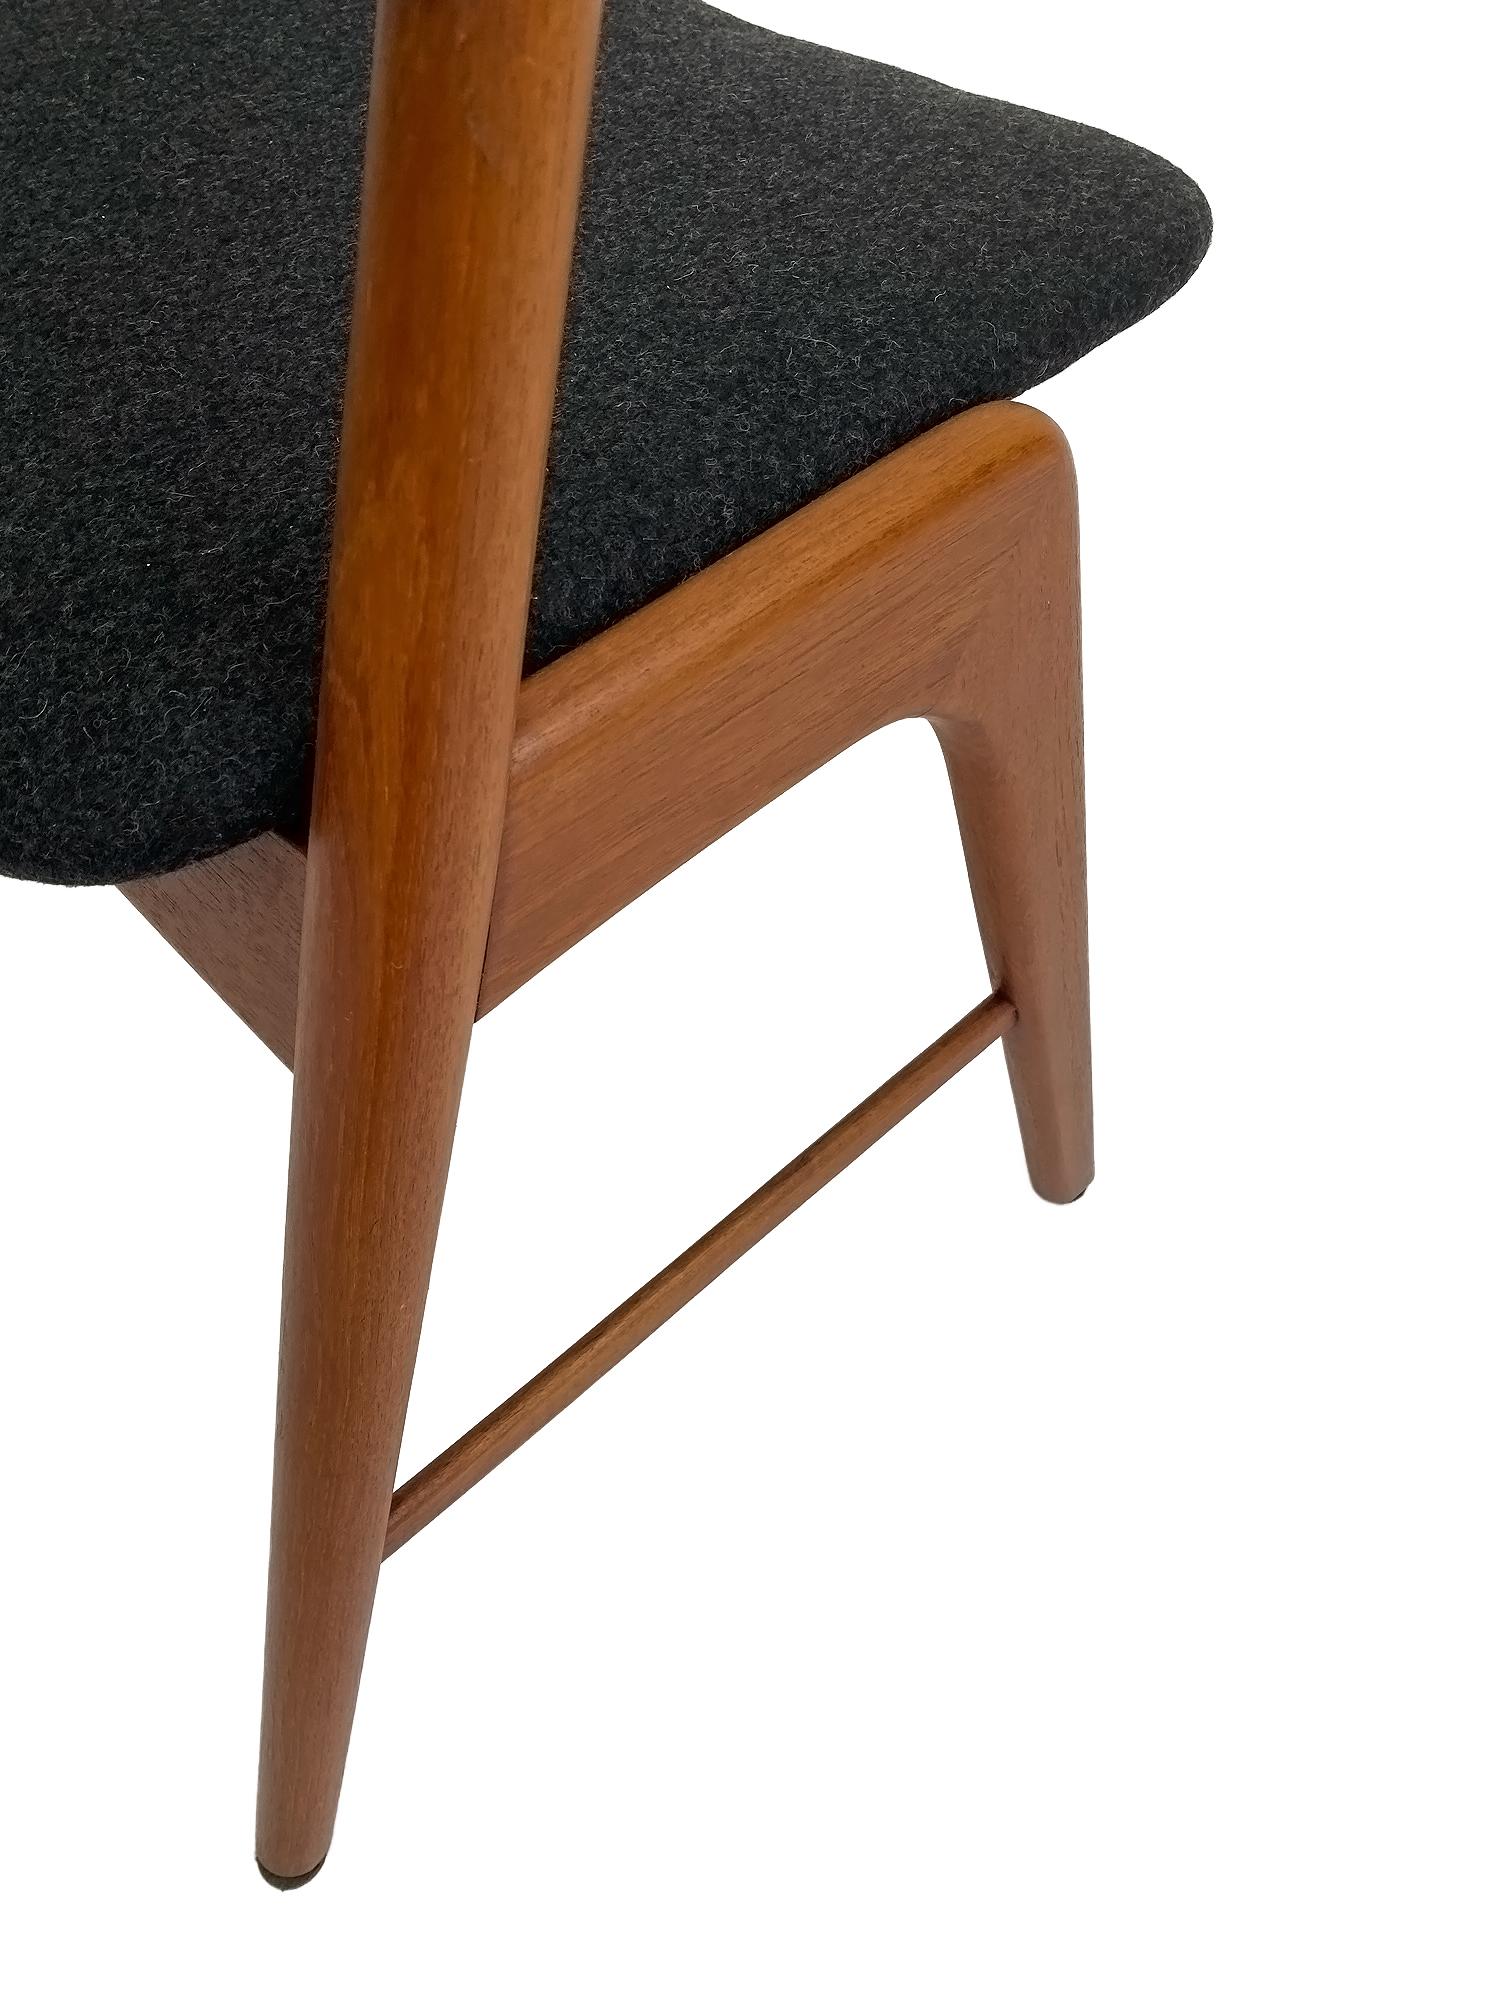 Mid-Century Modern Kai Kristiansen Model 32 Teak and Charcoal Wool Desk Chair, Denmark, 1960s